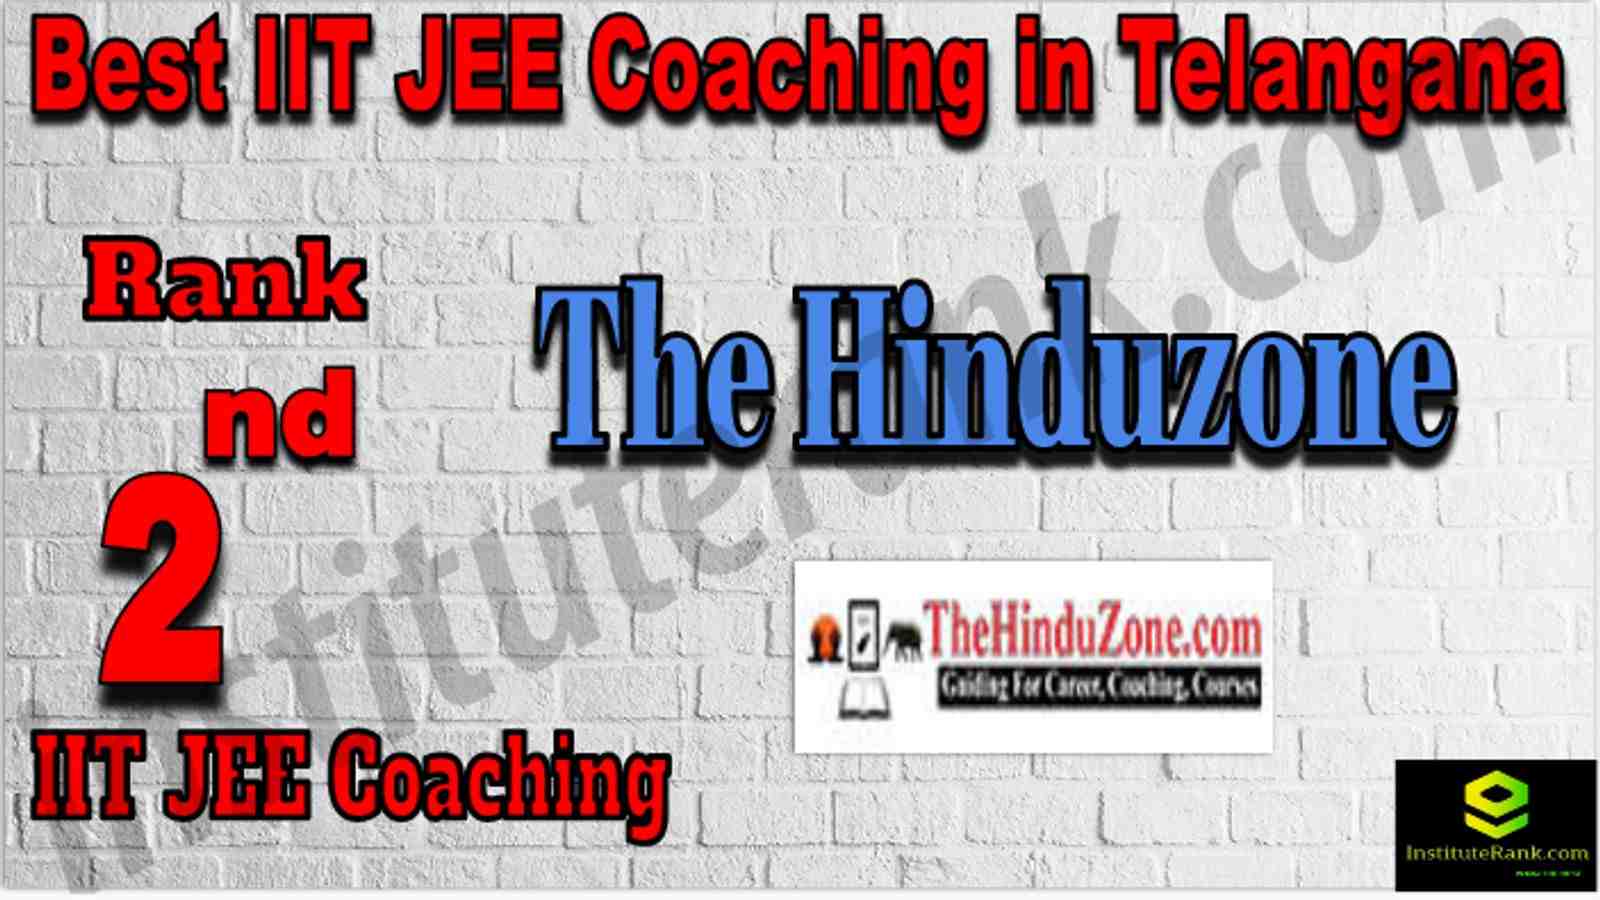 Rank 2nd Best IIT JEE Coaching in Telangana